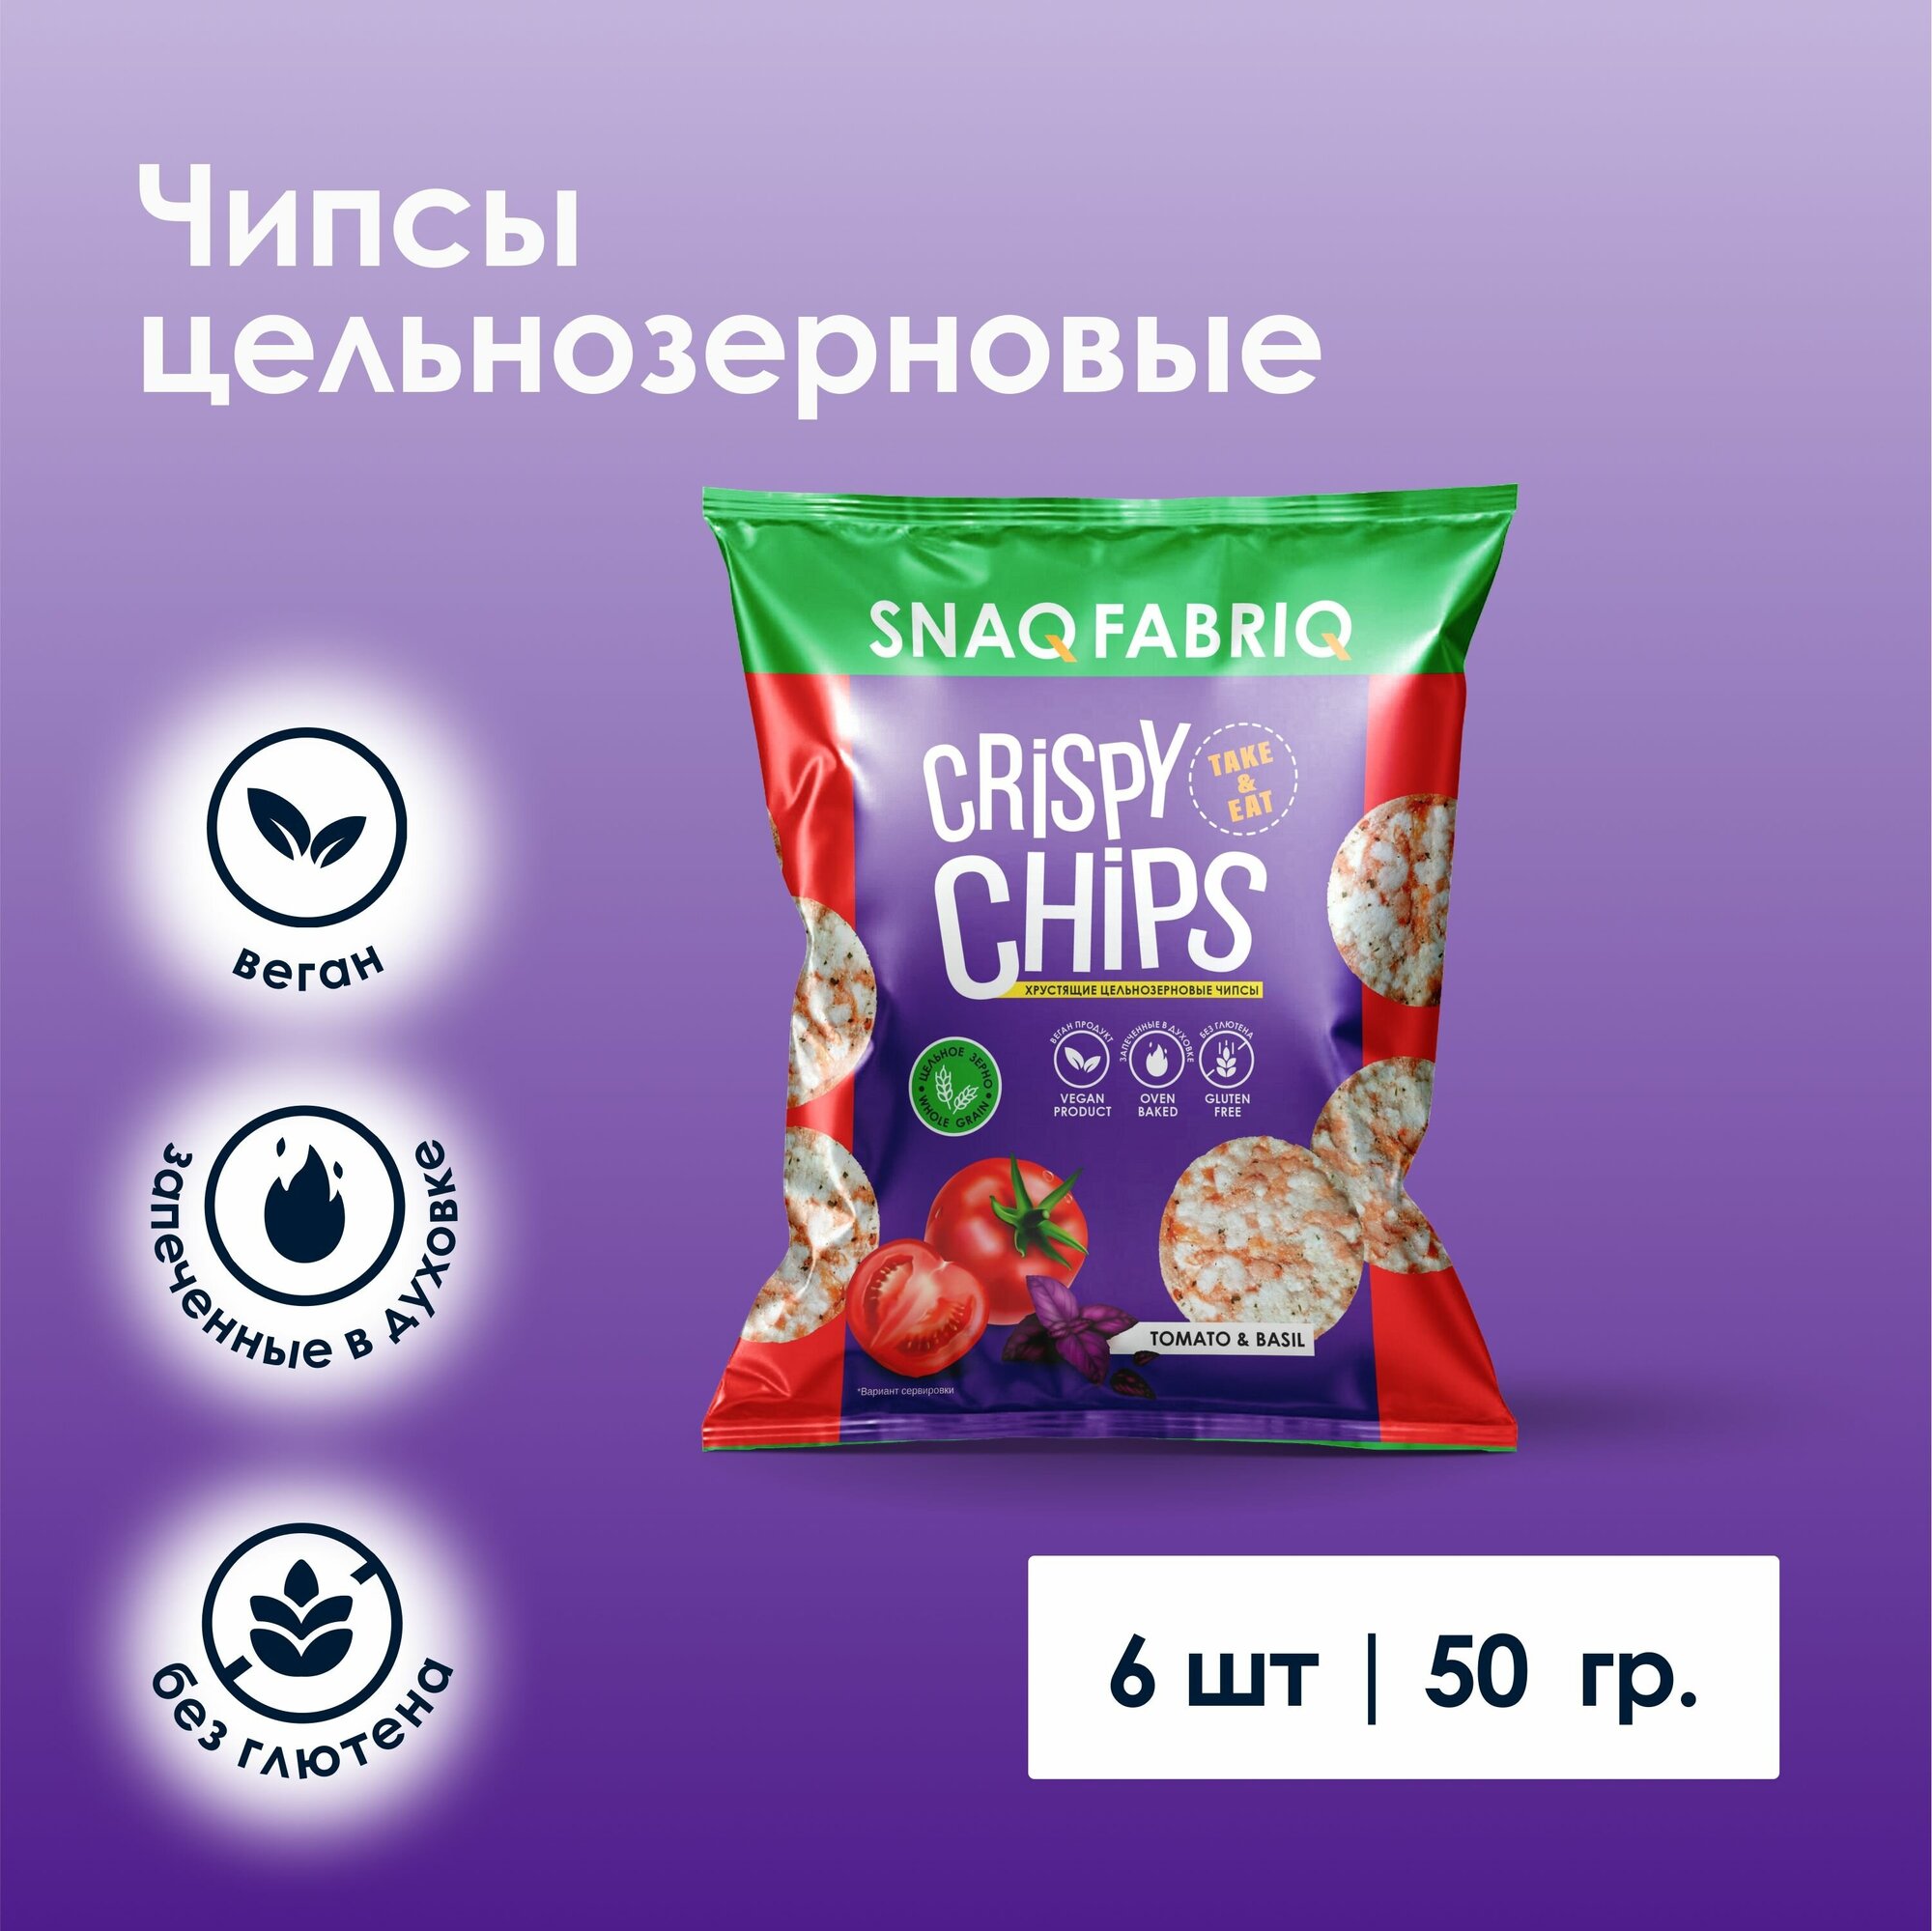 Чипсы цельнозерновые Snaq Fabriq Crispy Chips со вкусом "Томат и базилик" 50г х 6шт